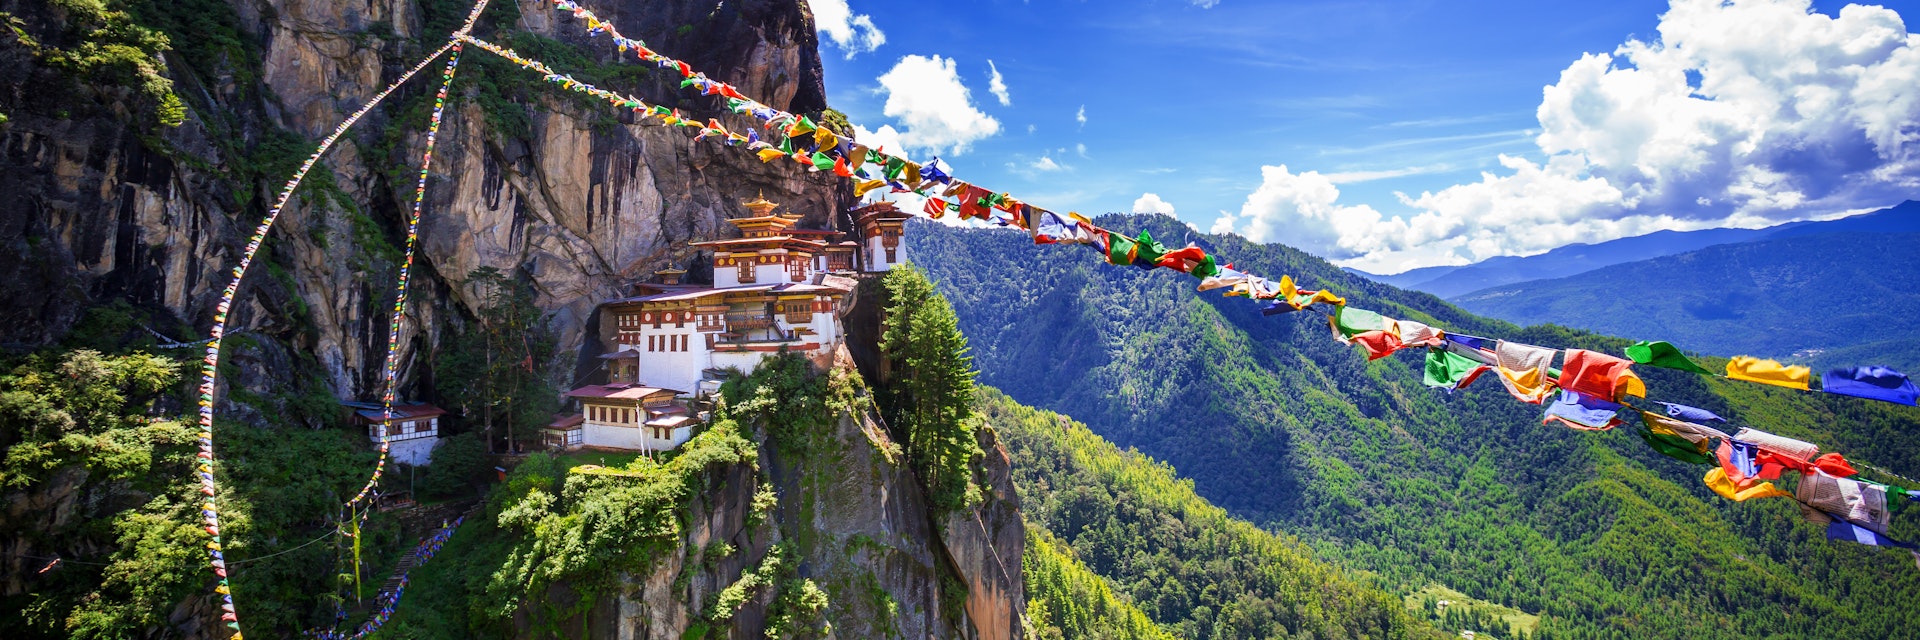 Taktshang Goemba, Tiger nest monastery, Bhutan
